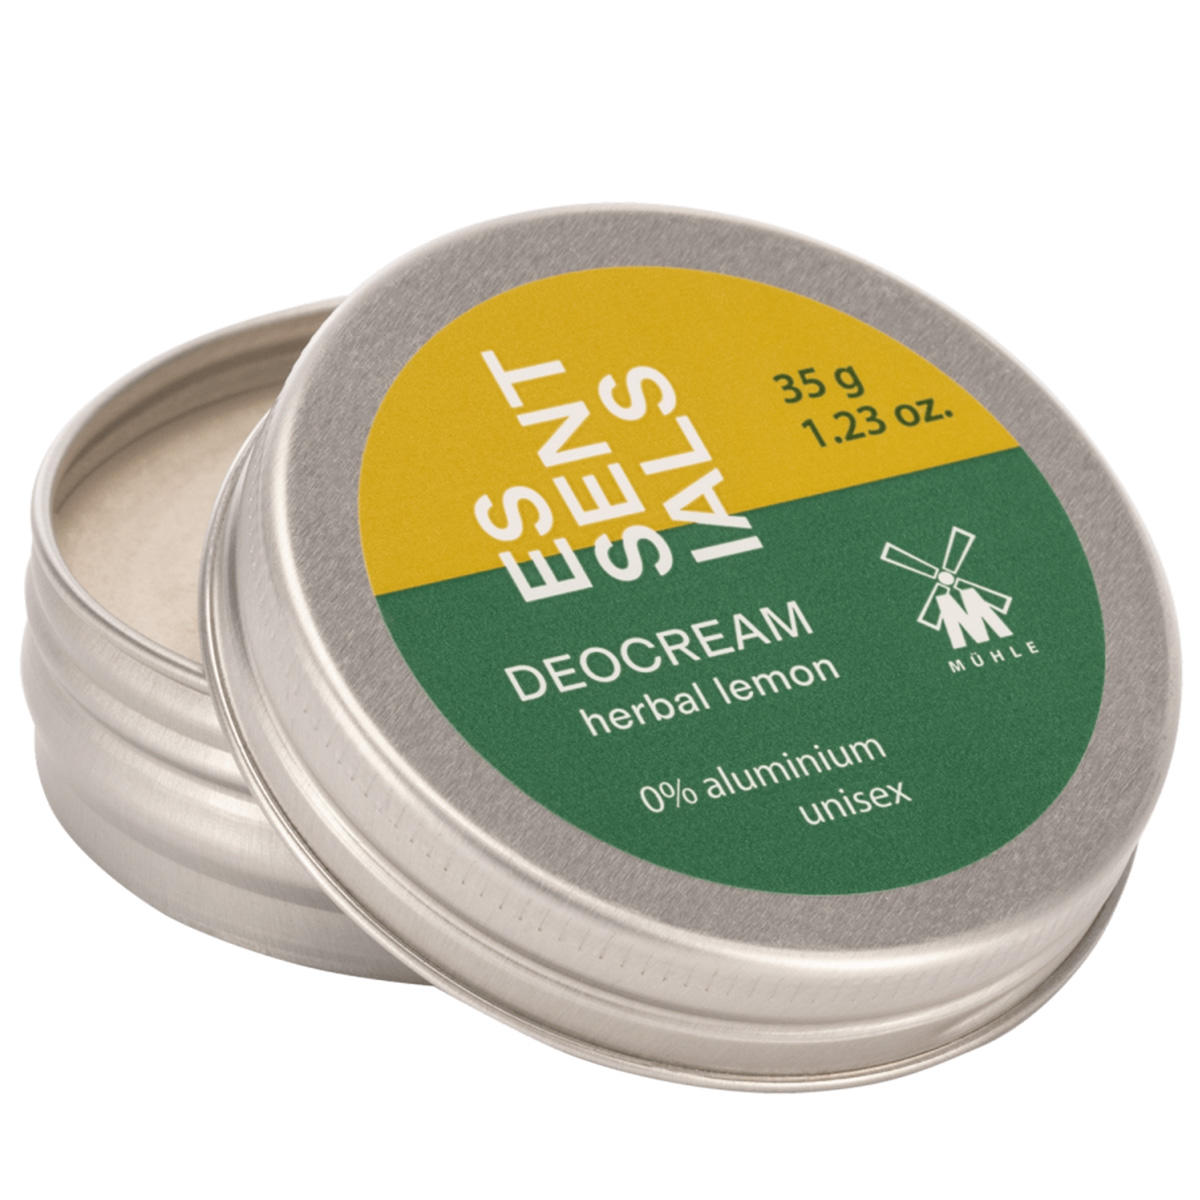 MÜHLE ESSENTIALS Deodorant cream Herbal Lemon 35 g - 3